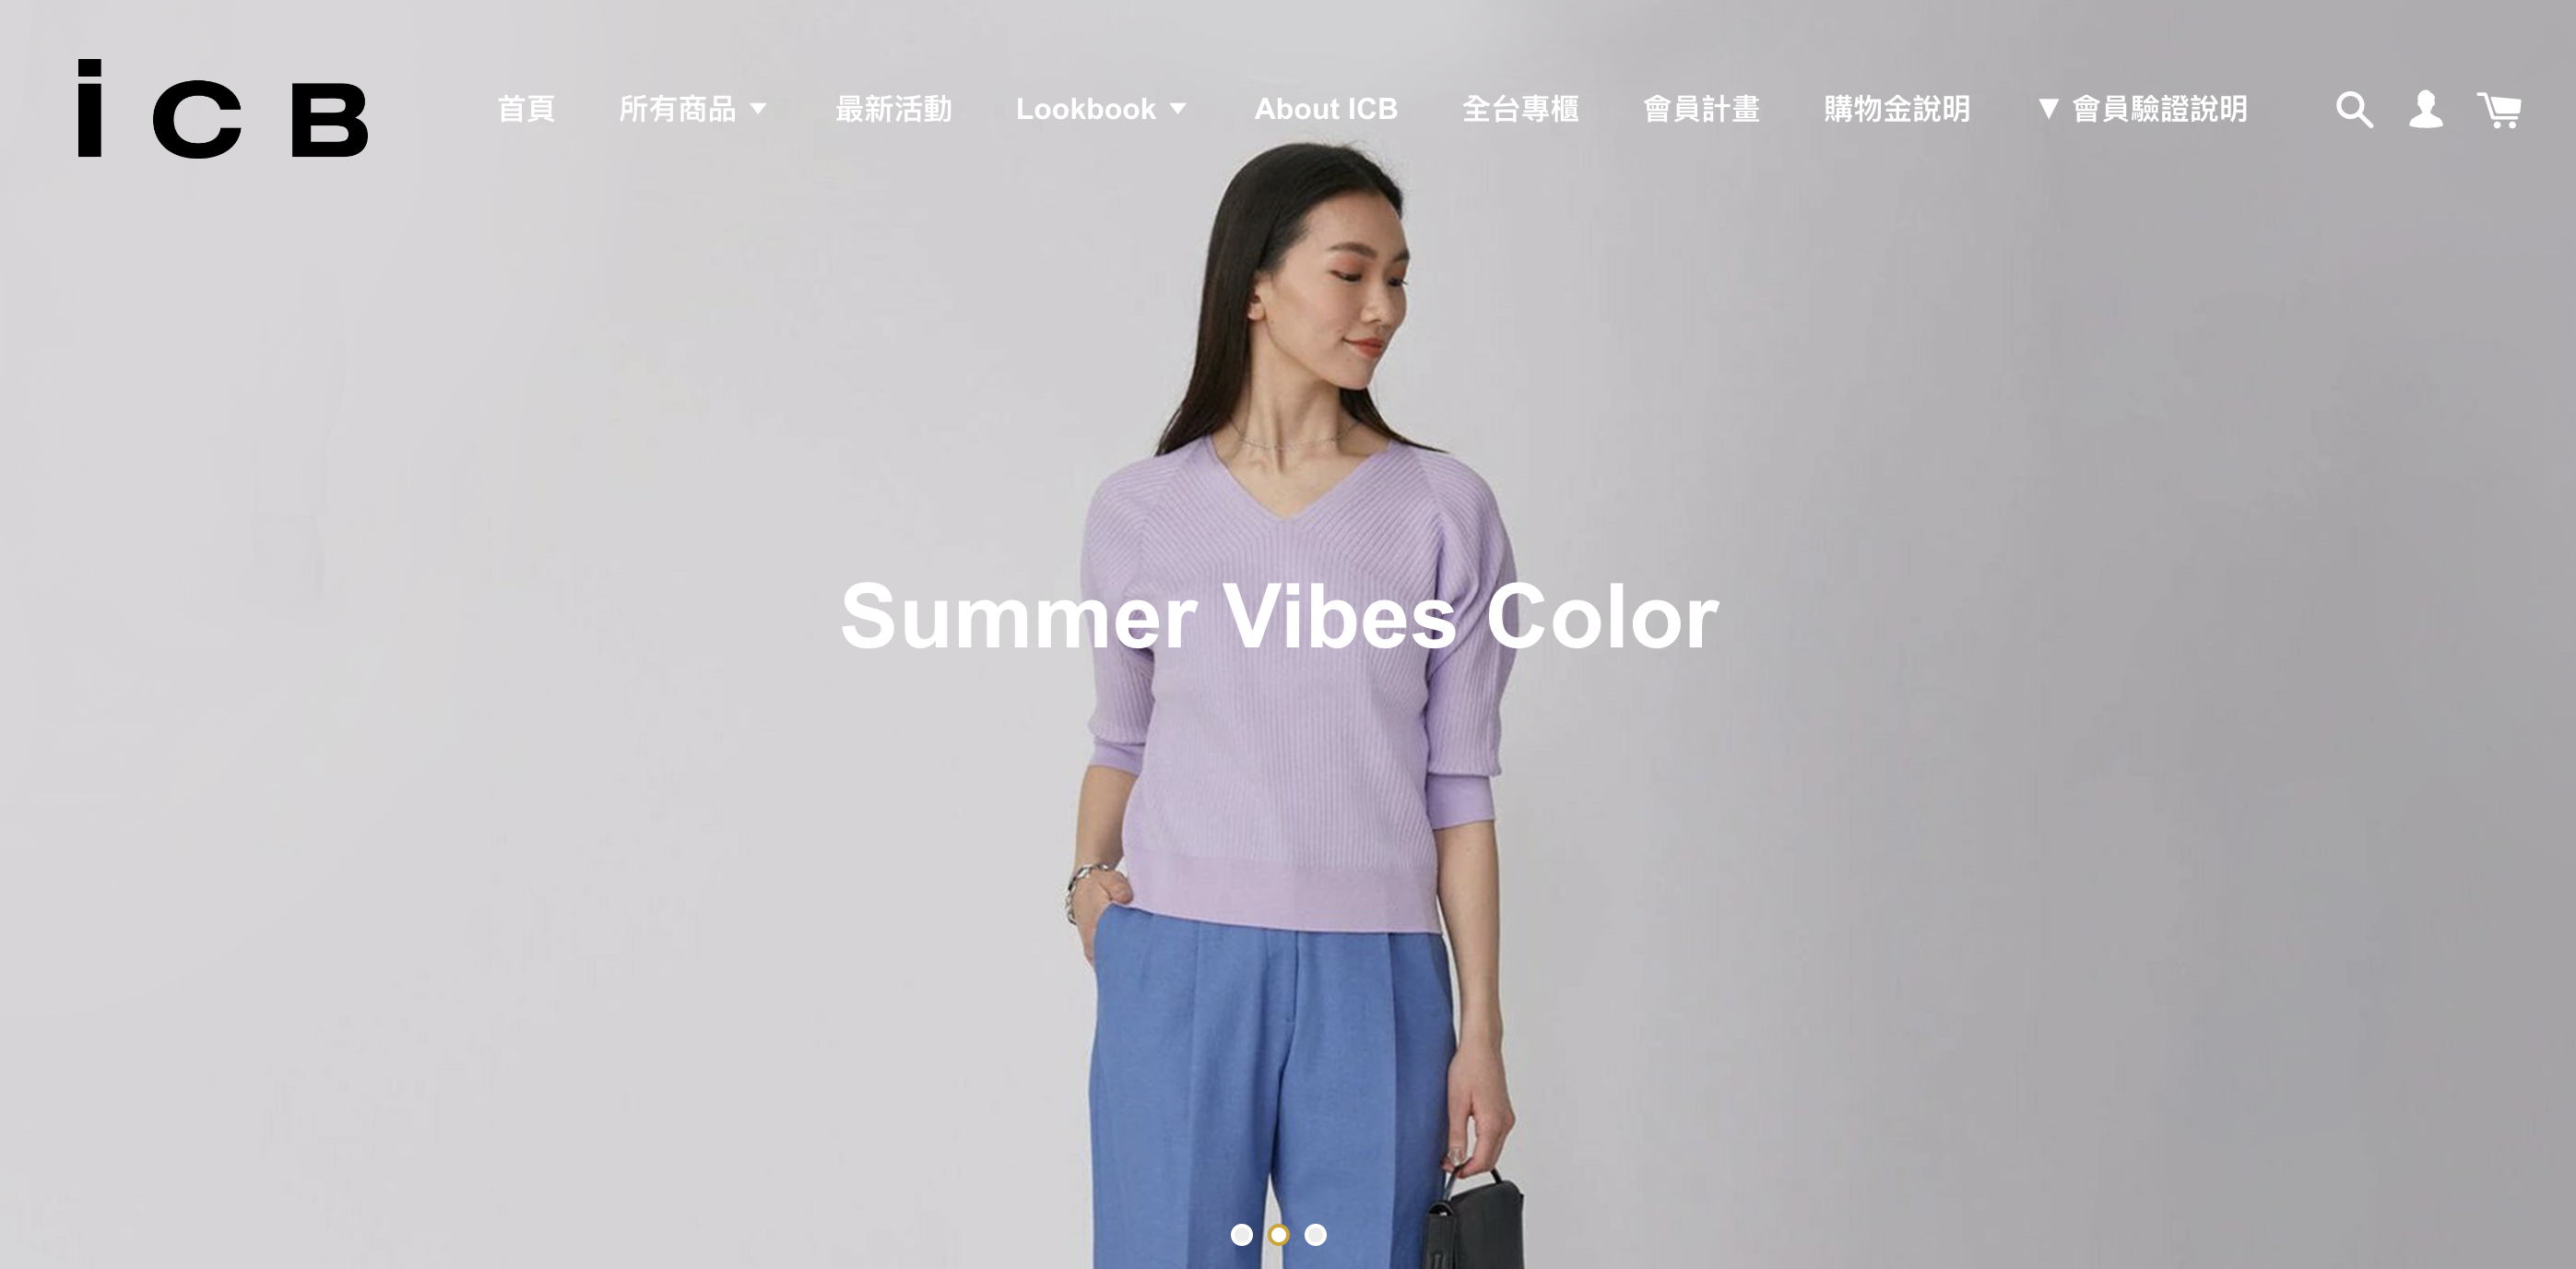 圖二、EasyStore 服飾商家所販售衣著的色彩，彰顯出活力、無憂無慮的感官體驗